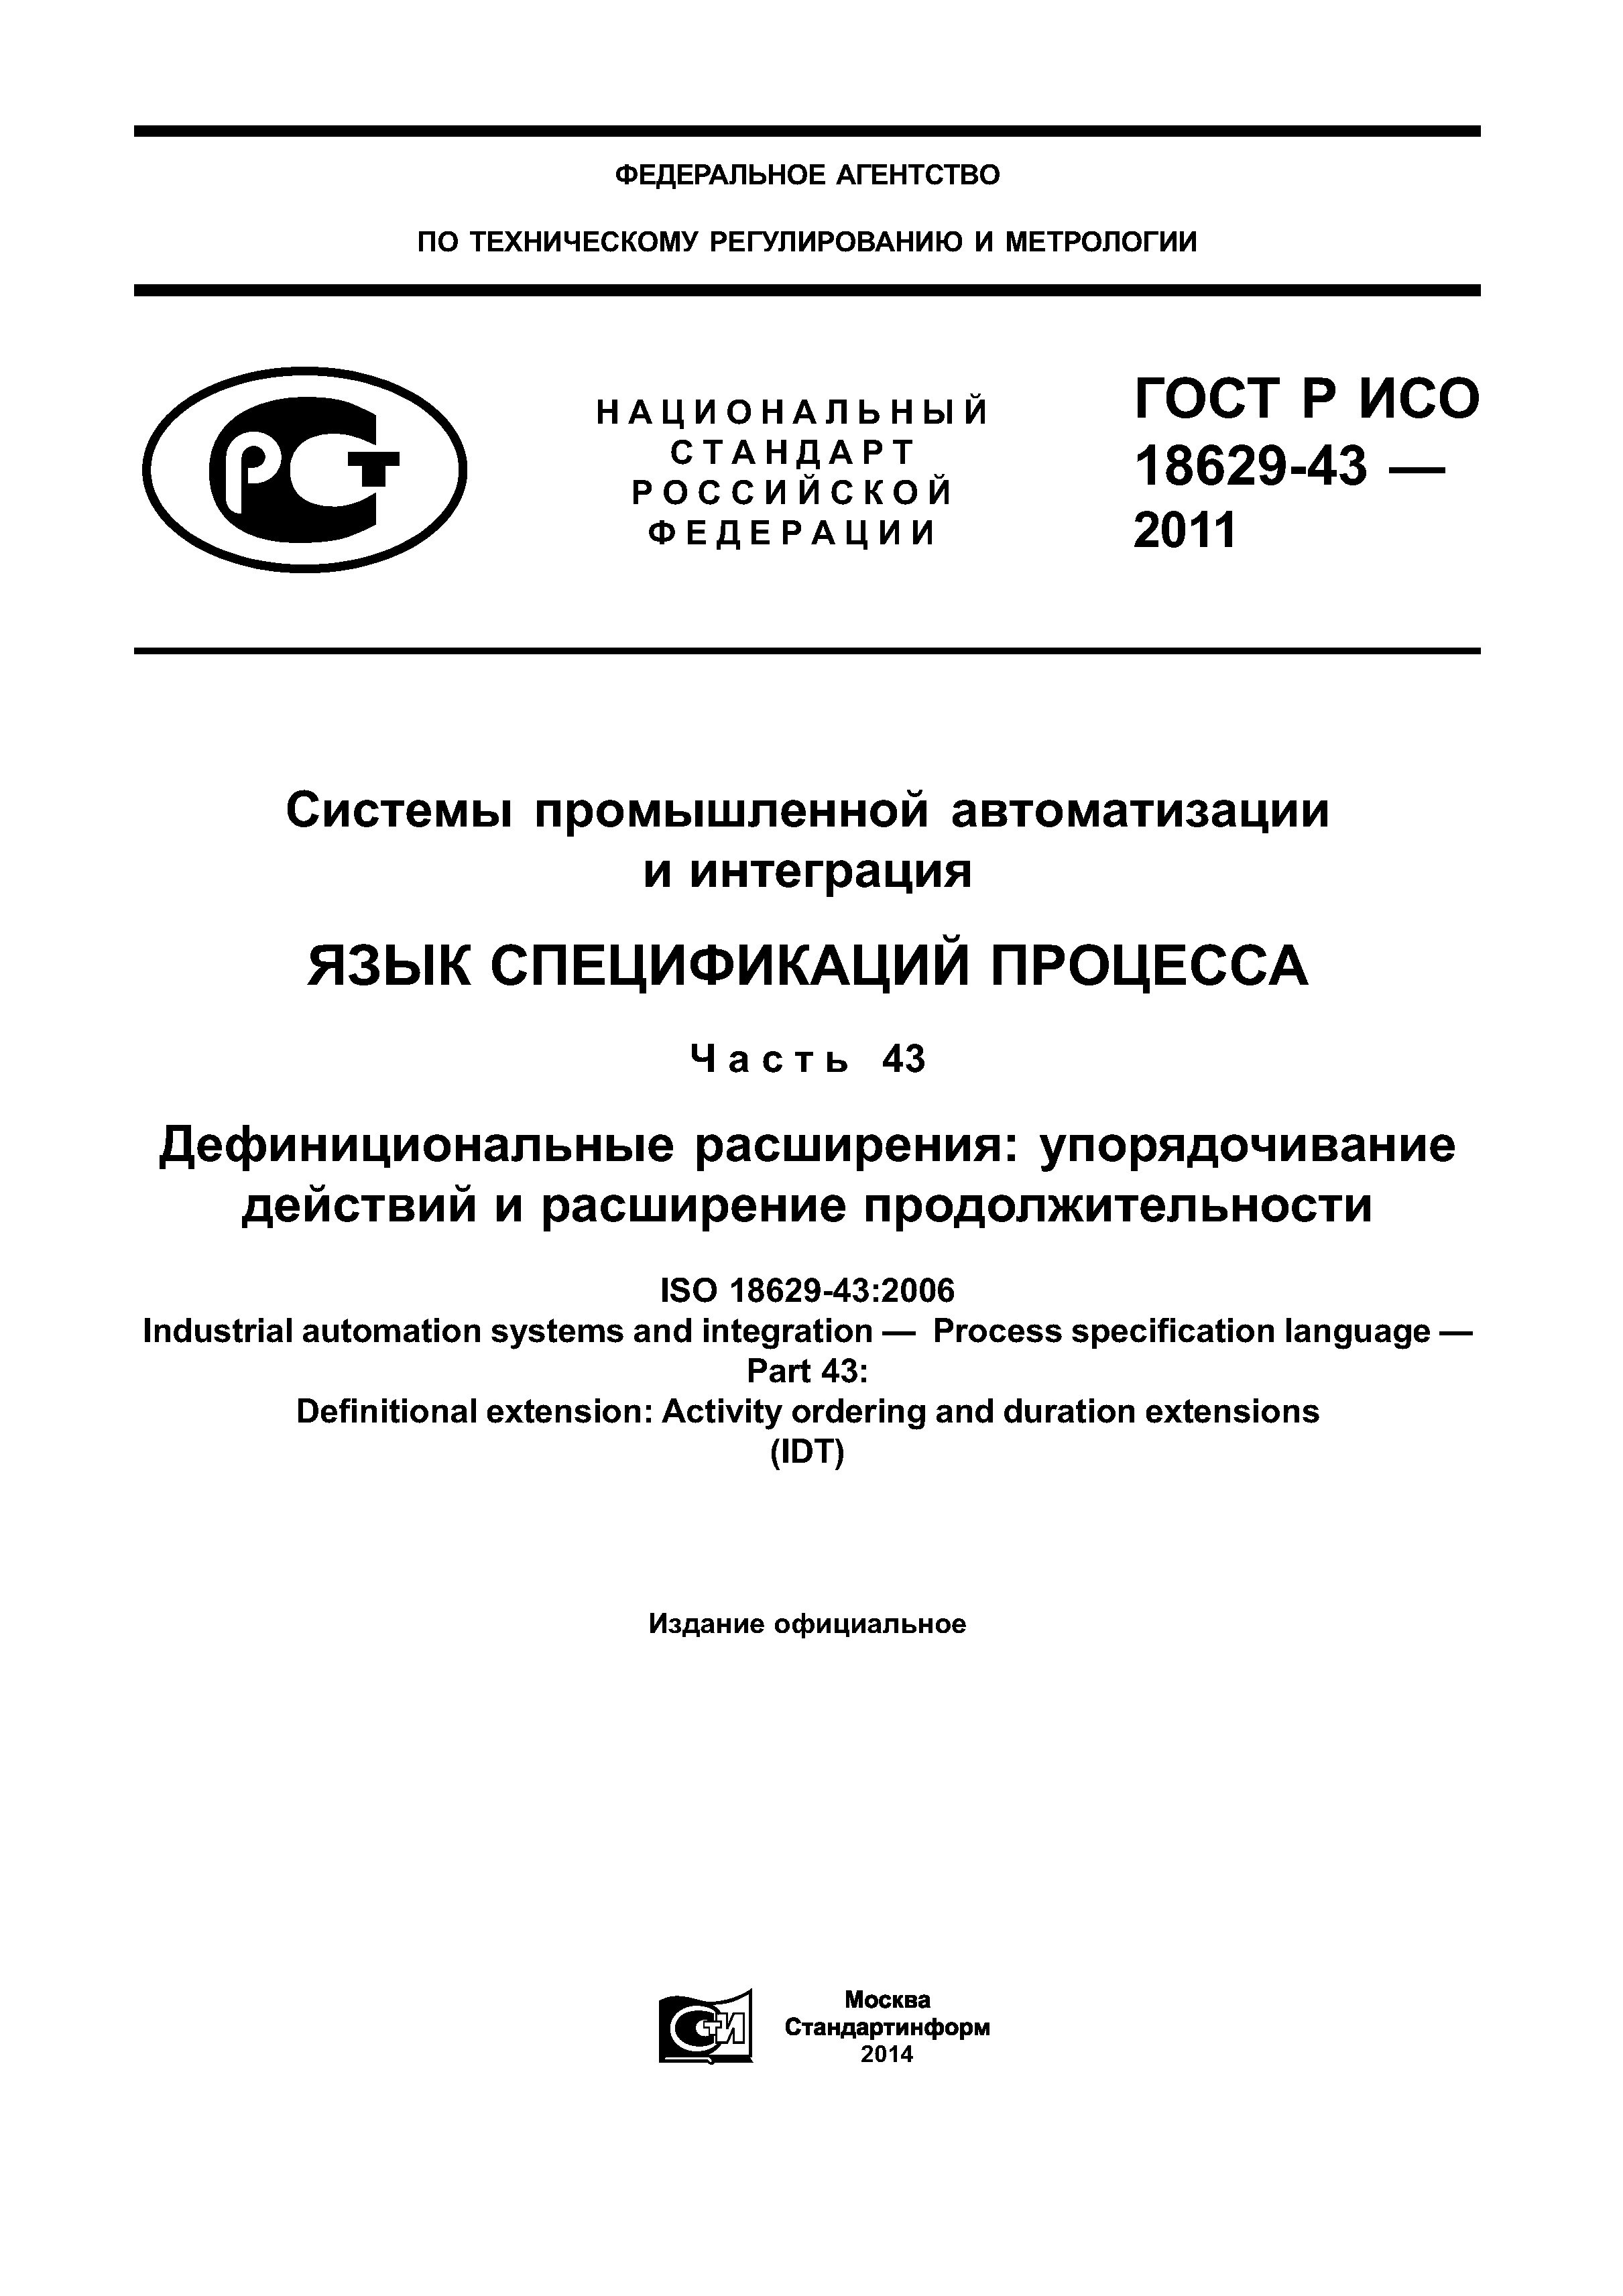 ГОСТ Р ИСО 18629-43-2011